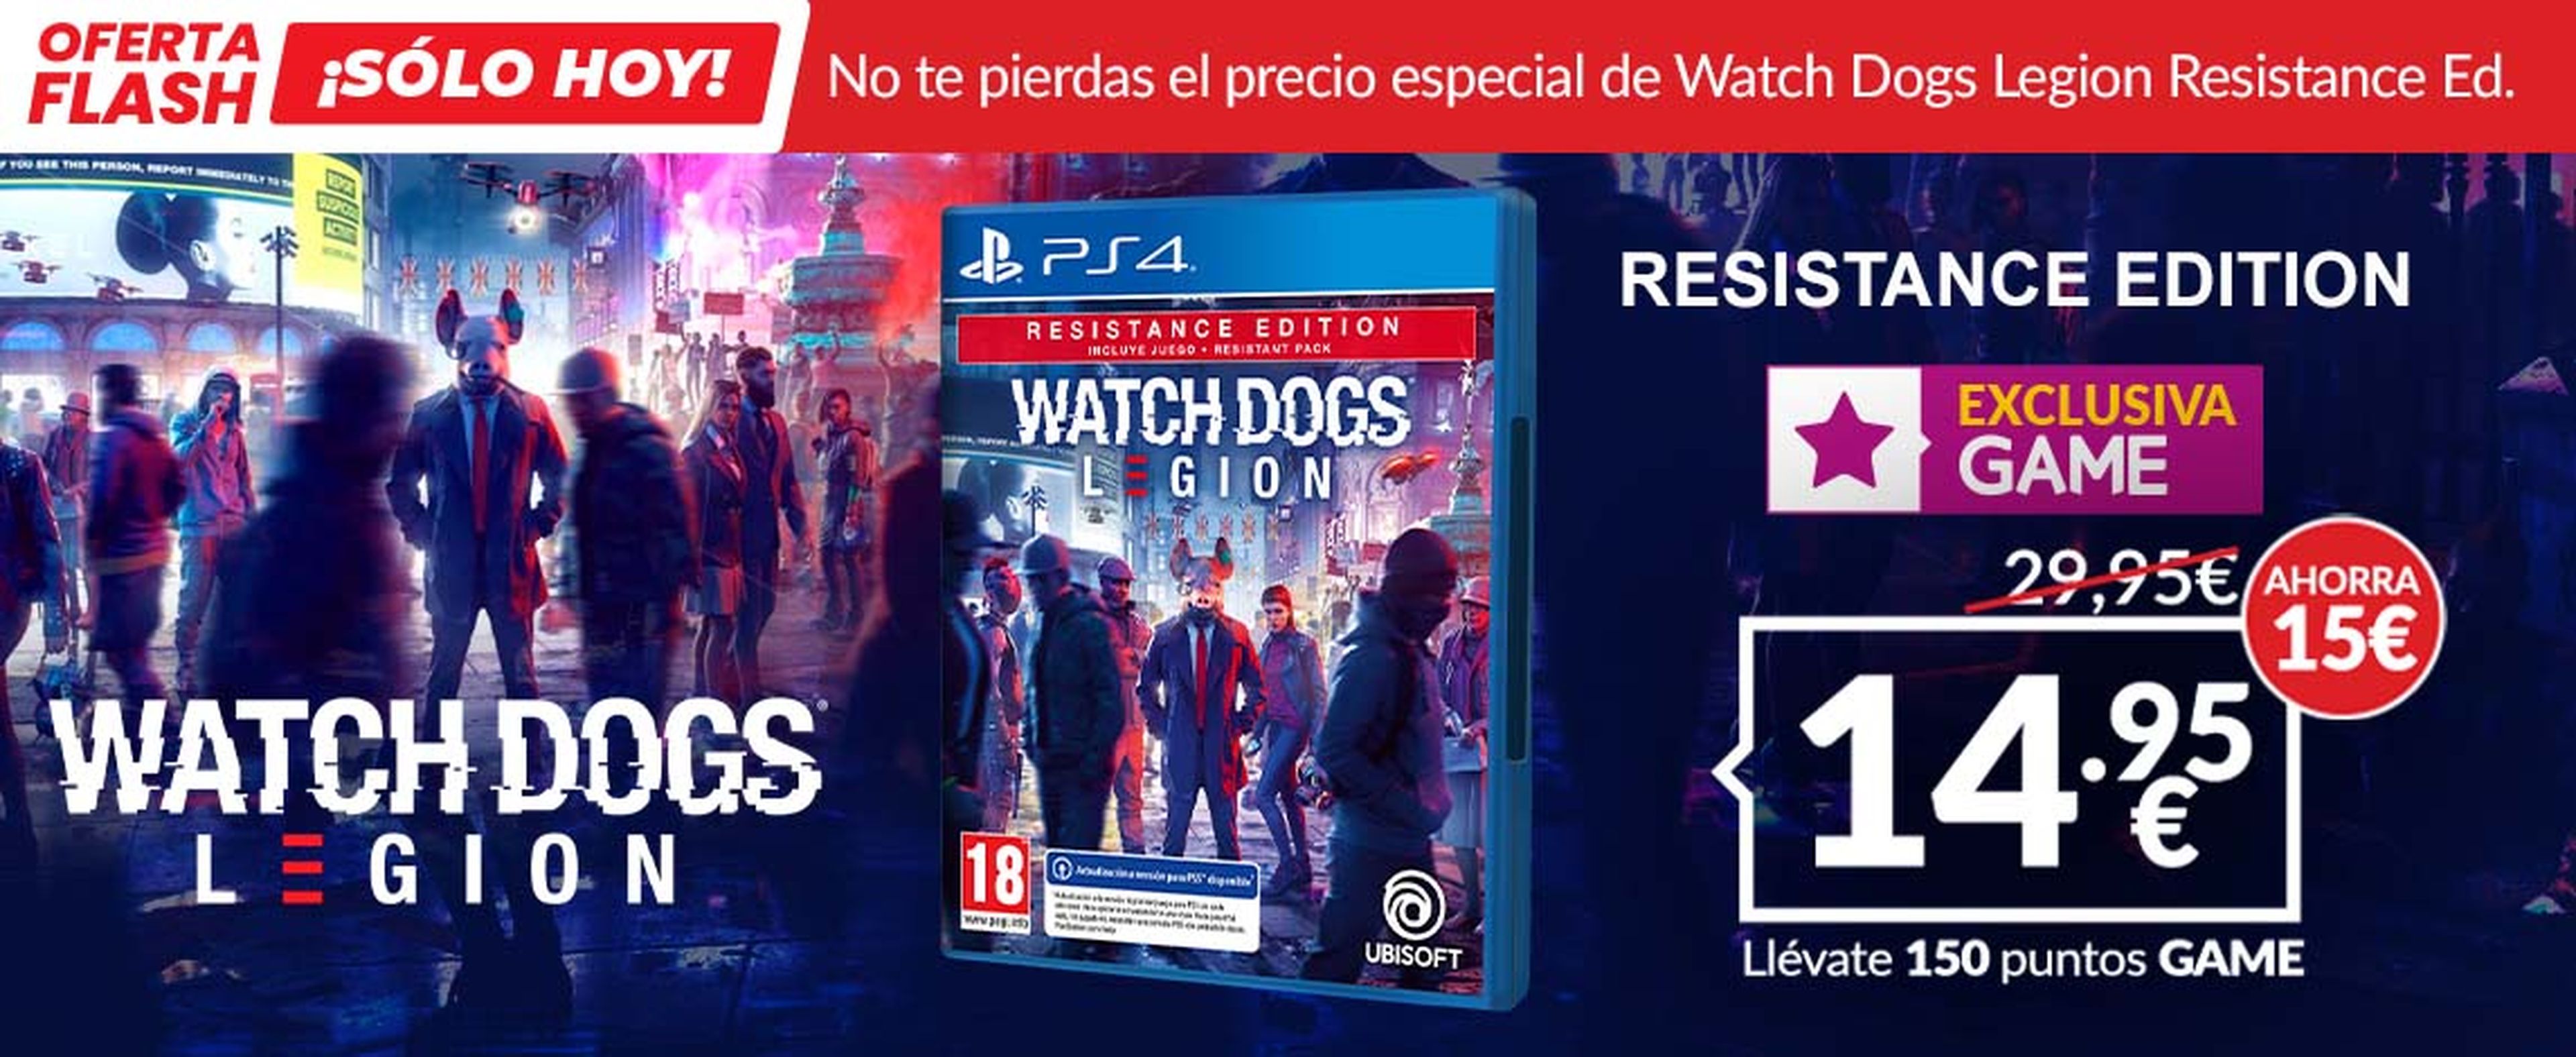 Oferta Flash de GAME: Watch Dogs Legion Resistance Edition por 14,95€  solamente disponible hoy